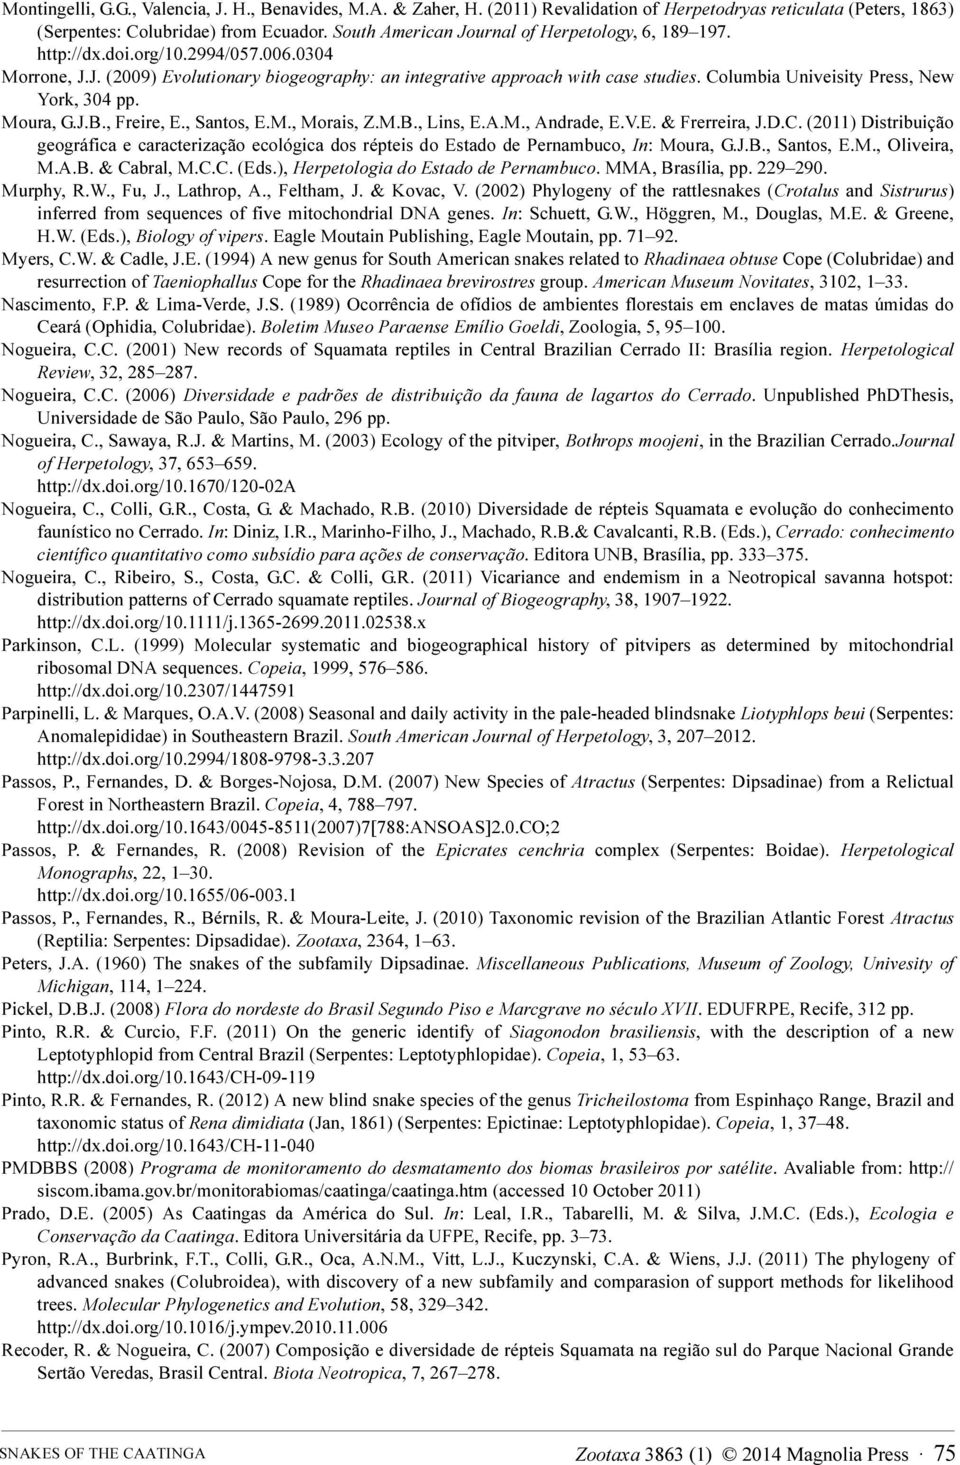 Columbia Univeisity Press, New York, 304 pp. Moura, G.J.B., Freire, E., Santos, E.M., Morais, Z.M.B., Lins, E.A.M., Andrade, E.V.E. & Frerreira, J.D.C. (2011) Distribuição geográfica e caracterização ecológica dos répteis do Estado de Pernambuco, In: Moura, G.